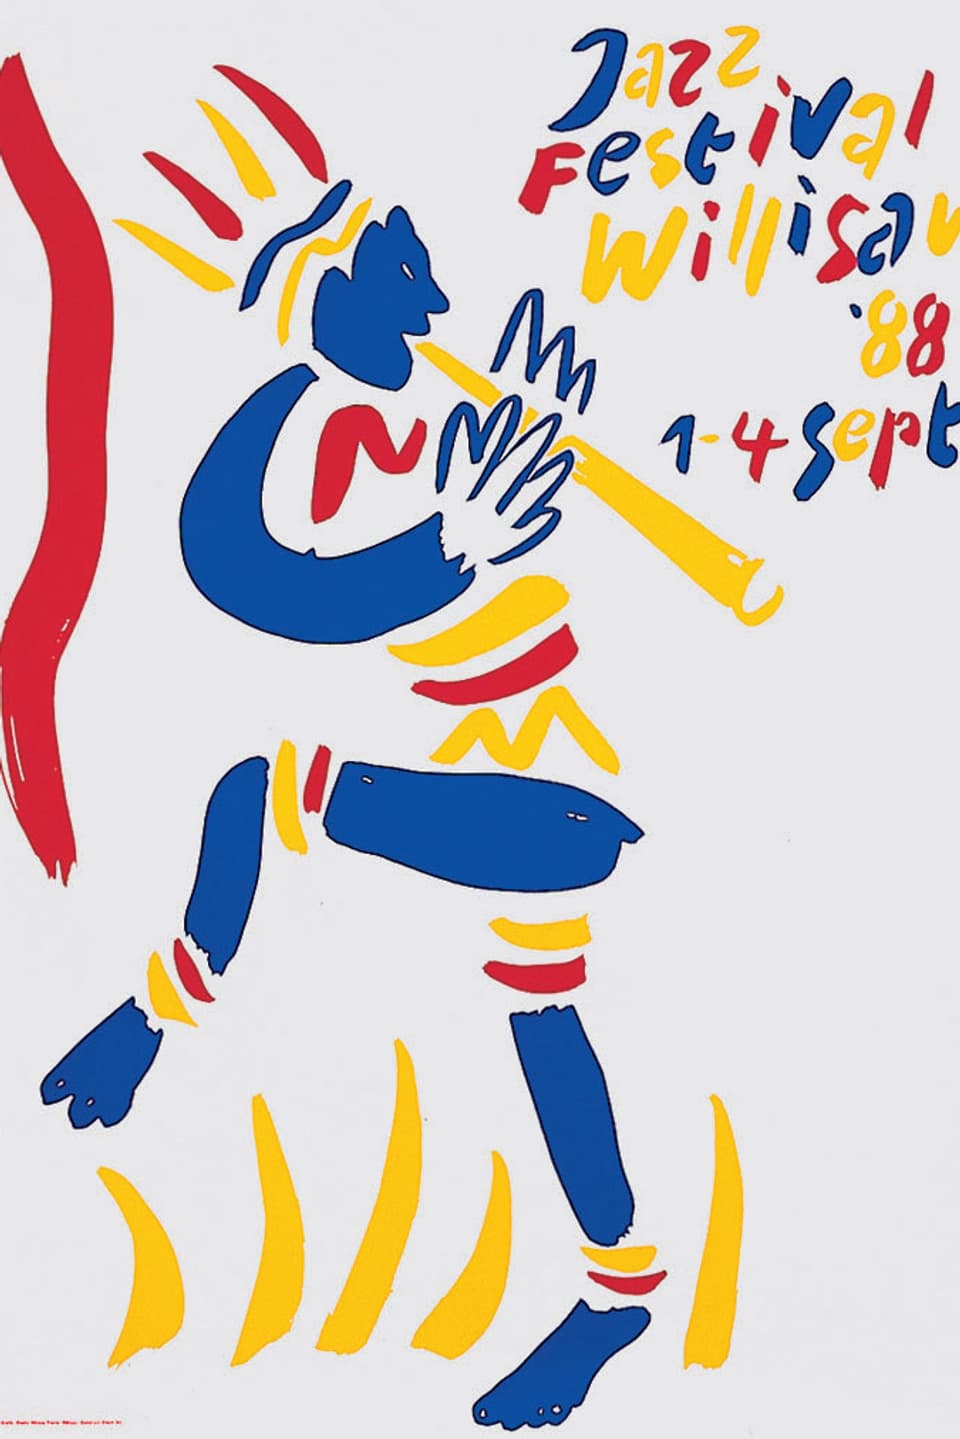 Auf dem Plakat von 1988 ist ein afrikanischer Blasinstrument-Spieler, gezeichnet in den Farben blau, gelb und rot, zu sehen.